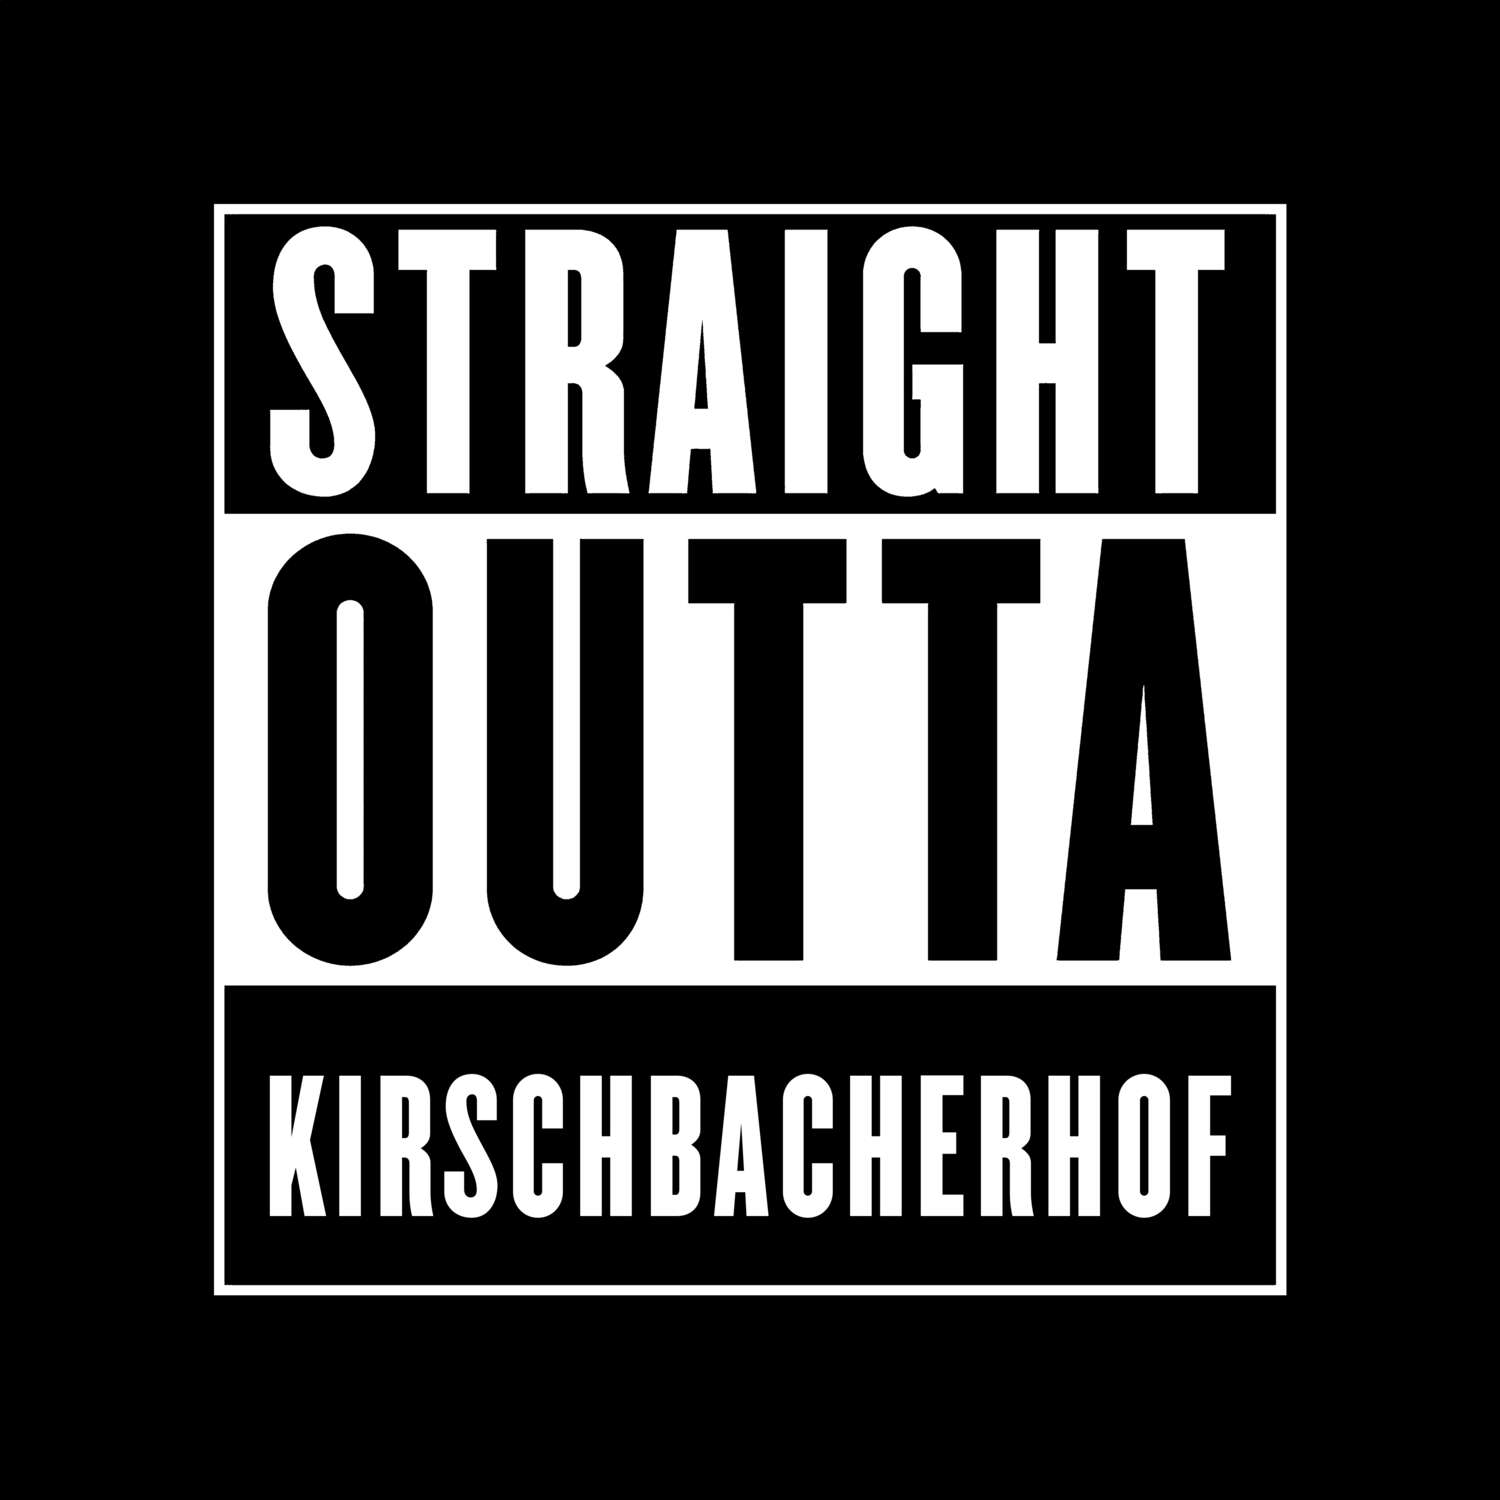 Kirschbacherhof T-Shirt »Straight Outta«